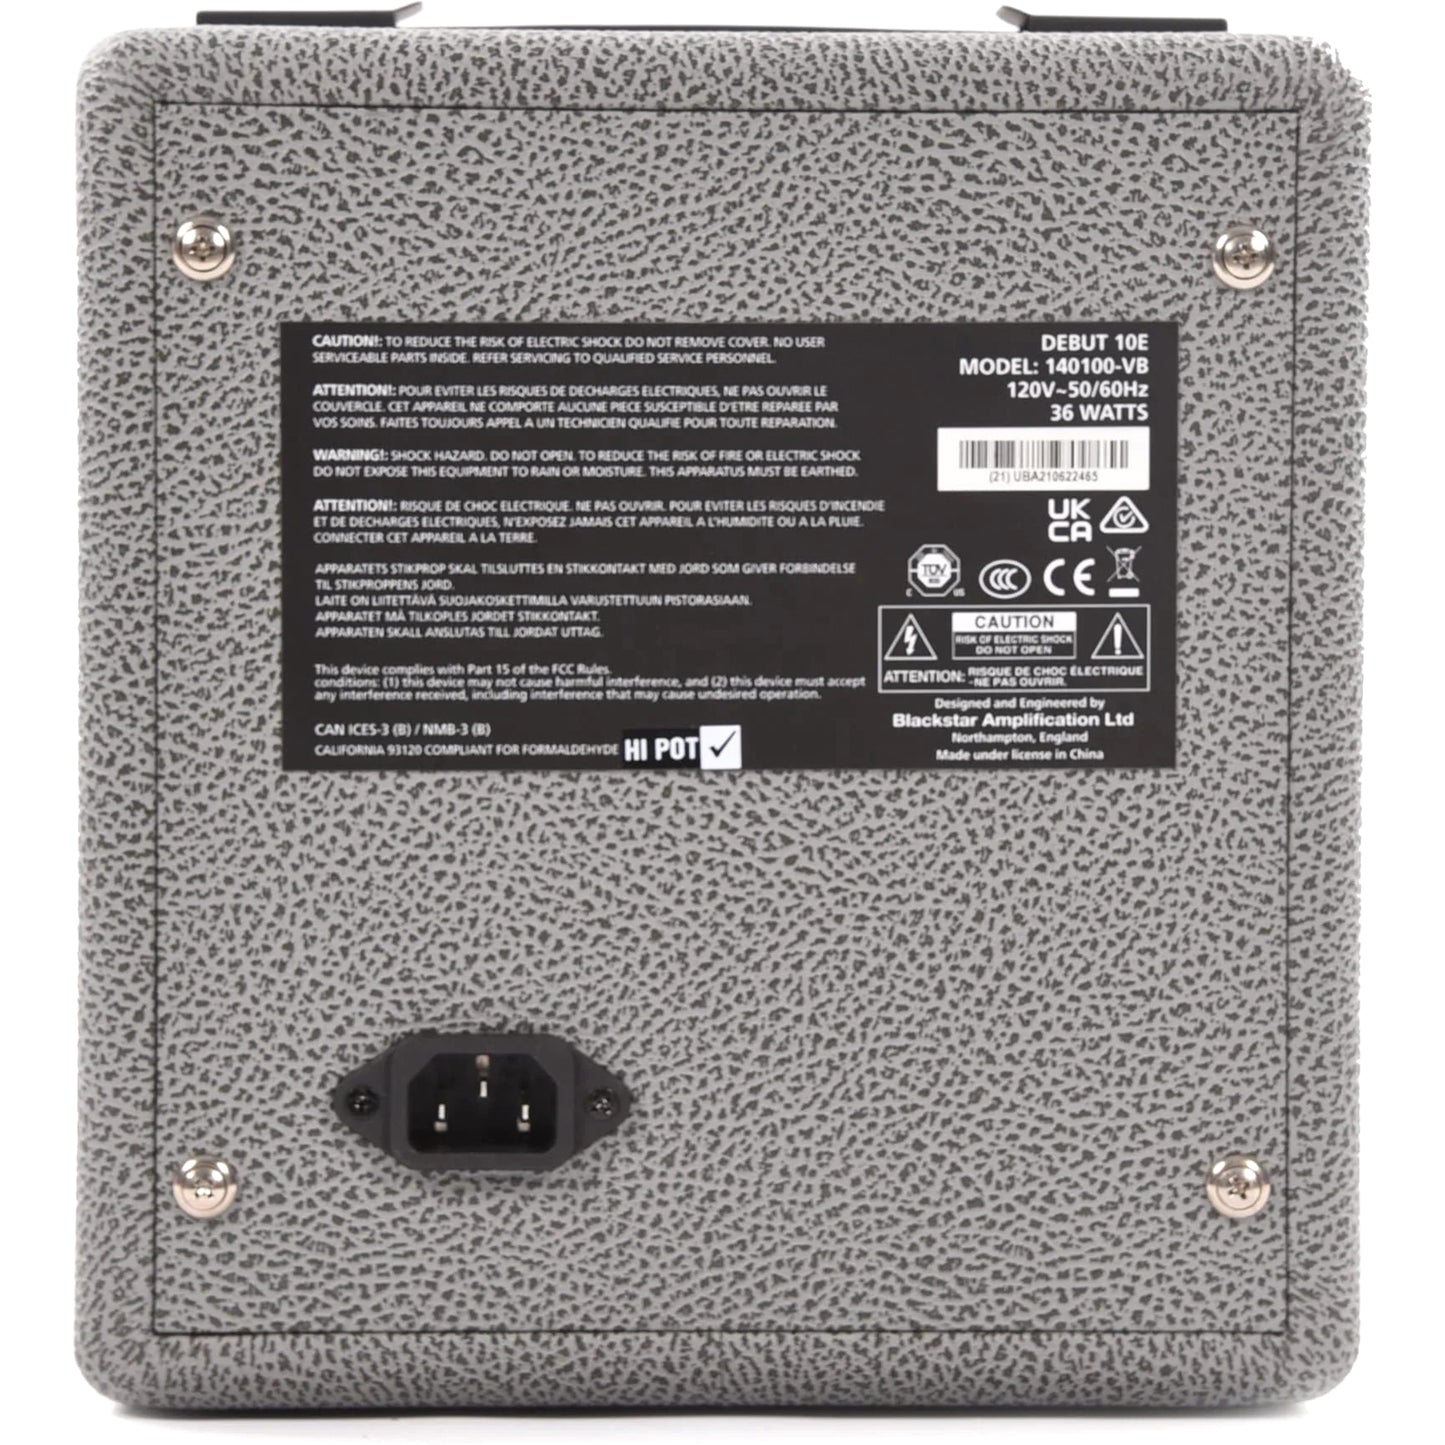 Blackstar Limited Edition Debut Series 10 Watt Amplifier in Bronco Grey